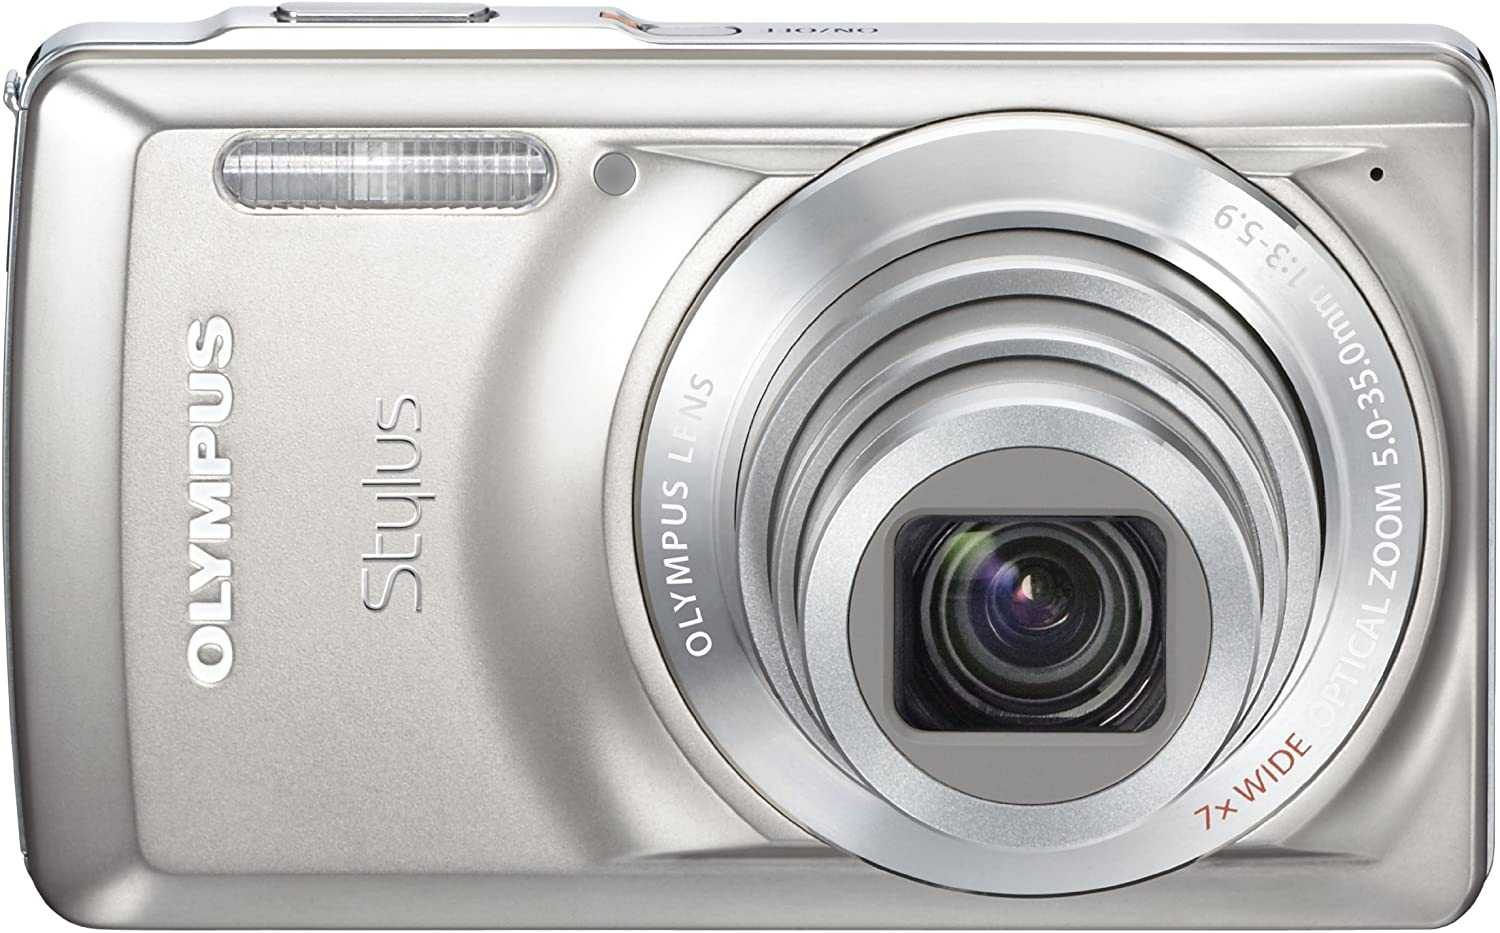 Цифровой фотоаппарат Olympus Stylus µ 7030 - подробные характеристики обзоры видео фото Цены в интернет-магазинах где можно купить цифровую фотоаппарат Olympus Stylus µ 7030